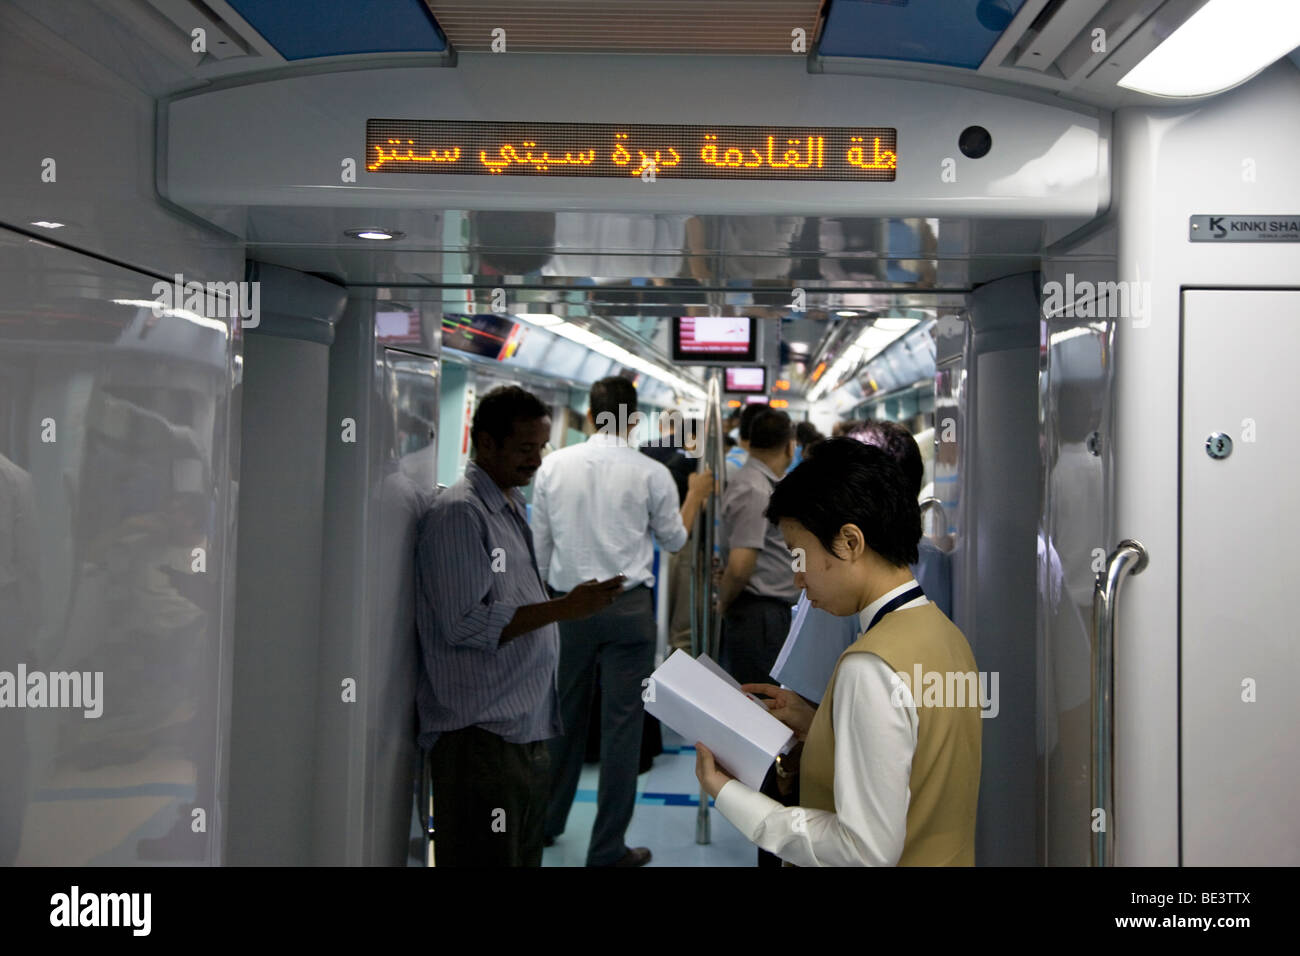 Passagiere-Dubai-Metro Zug Bahn Linie s Stockfoto